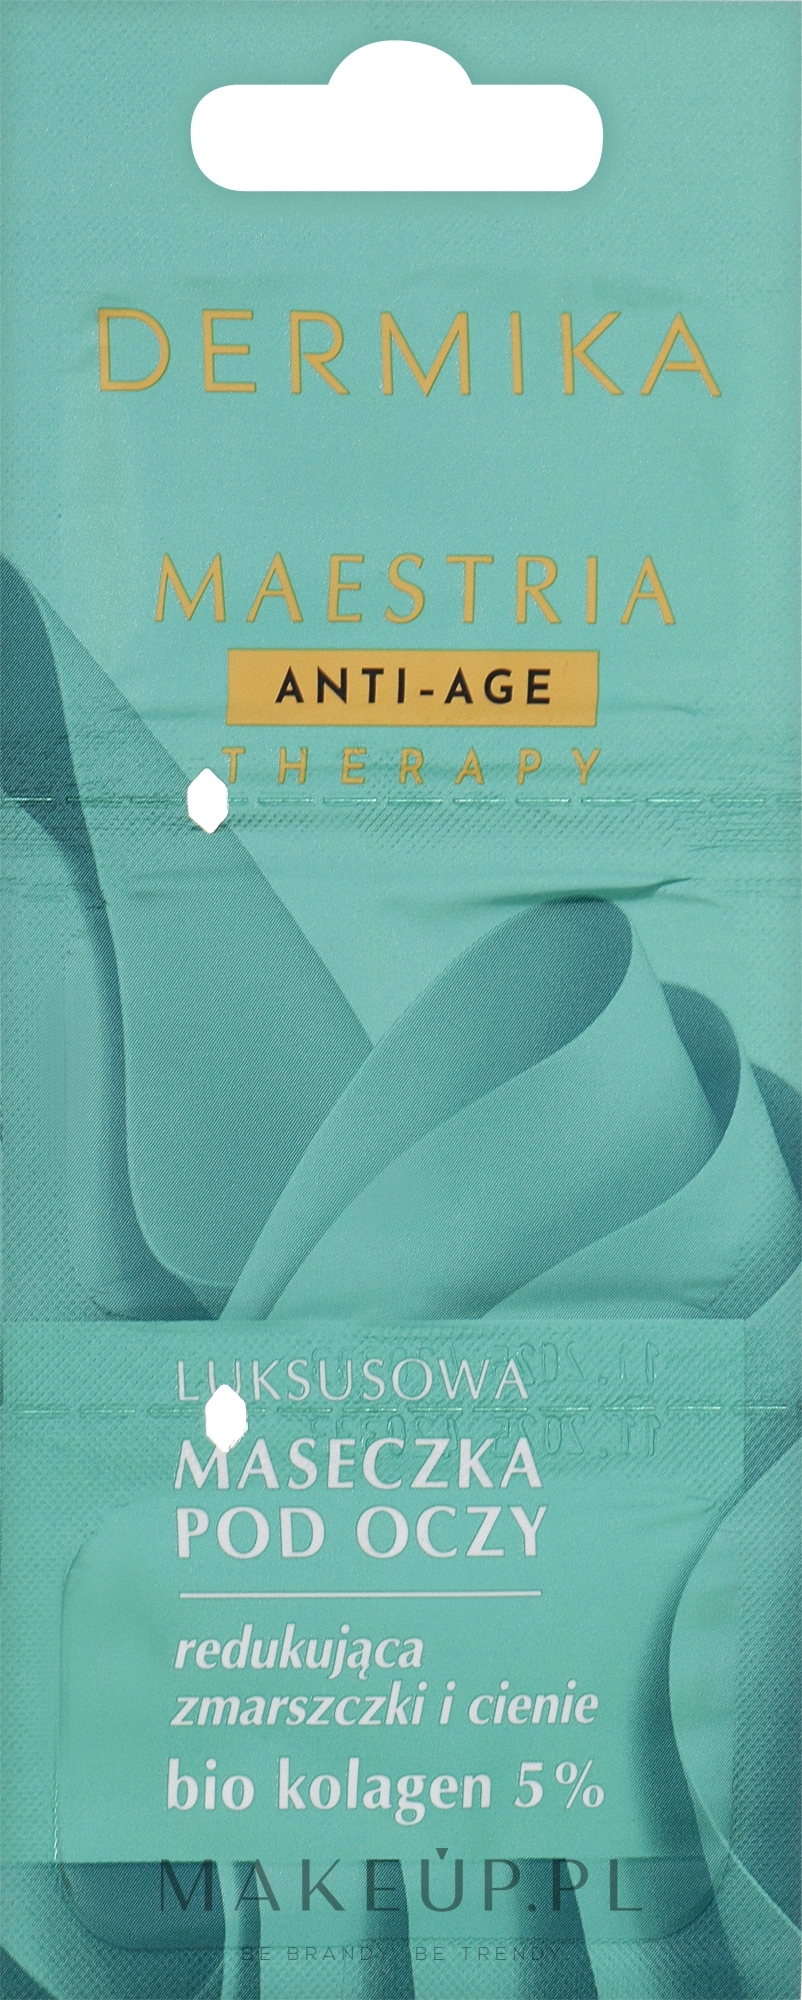 Luksusowa maseczka pod oczy redukująca zmarszczki i cienie - Dermika Maestria Anti-age Therapy — Zdjęcie 3 x 1.5 ml